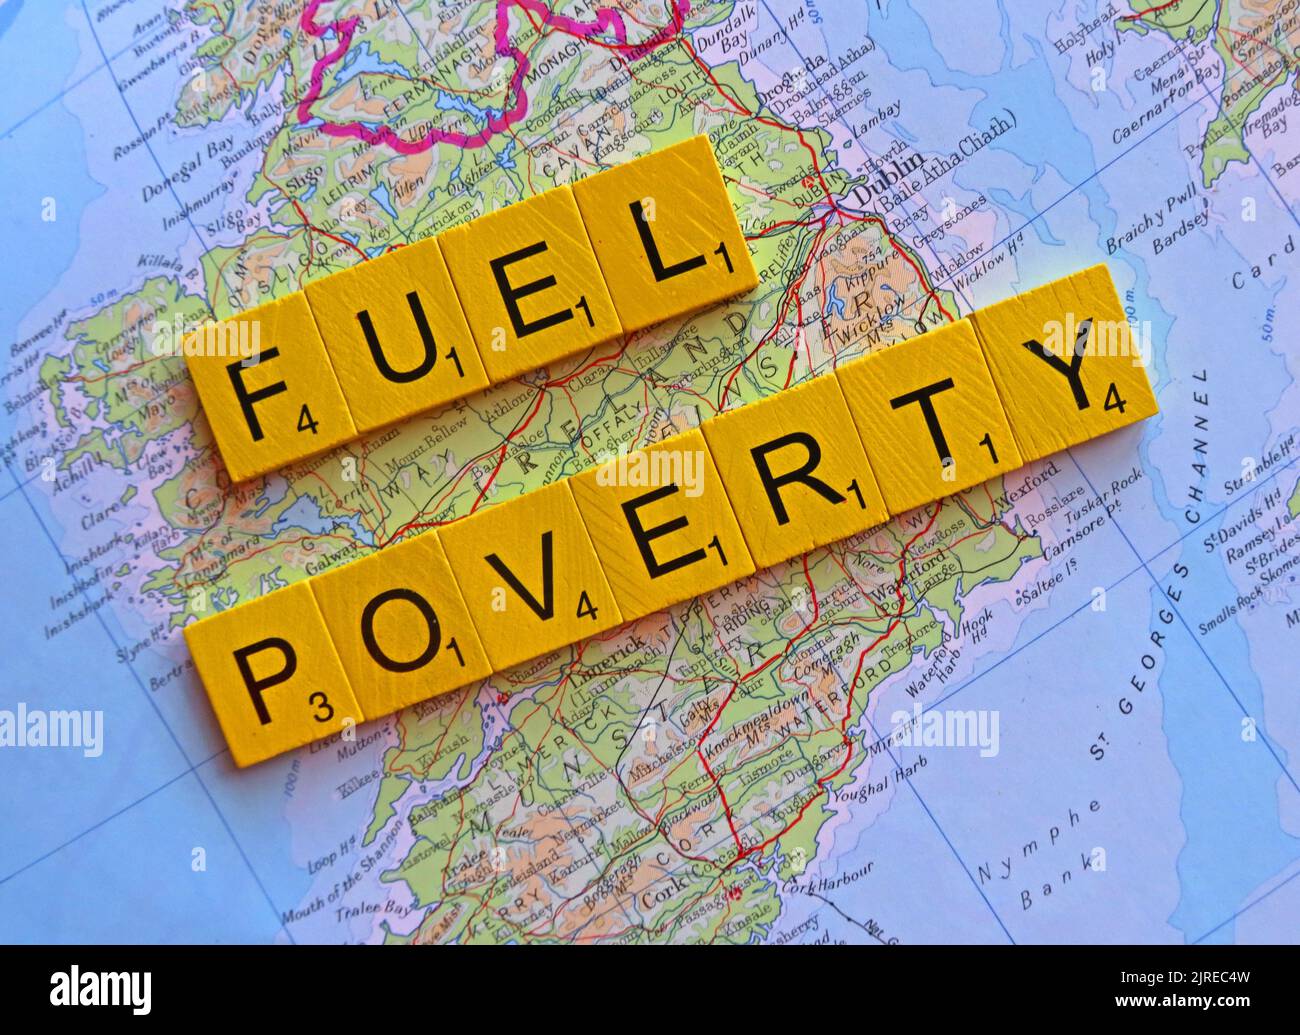 Carte montrant Eire, Irlande du Sud avec les mots Fuel Poverty. Plus de la moitié des ménages britanniques à travers la Grande-Bretagne choisiront de manger ou de chauffer Banque D'Images